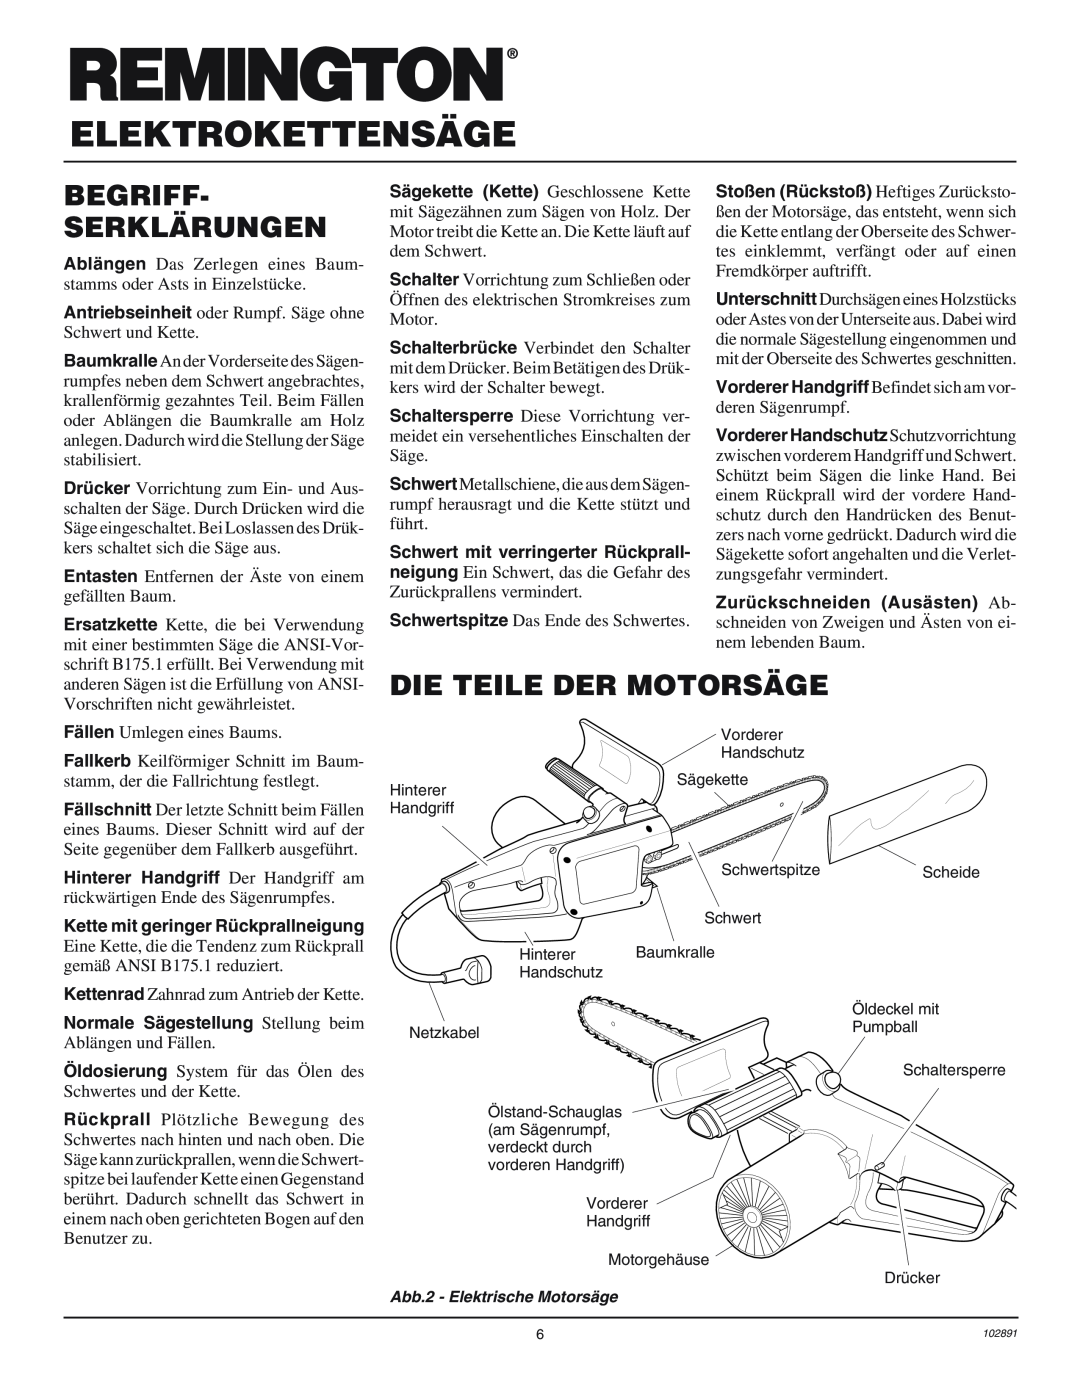 Desa 100271-01 owner manual Begriff- Serklärungen, Die Teile Der Motorsäge, Elektrokettensäge 